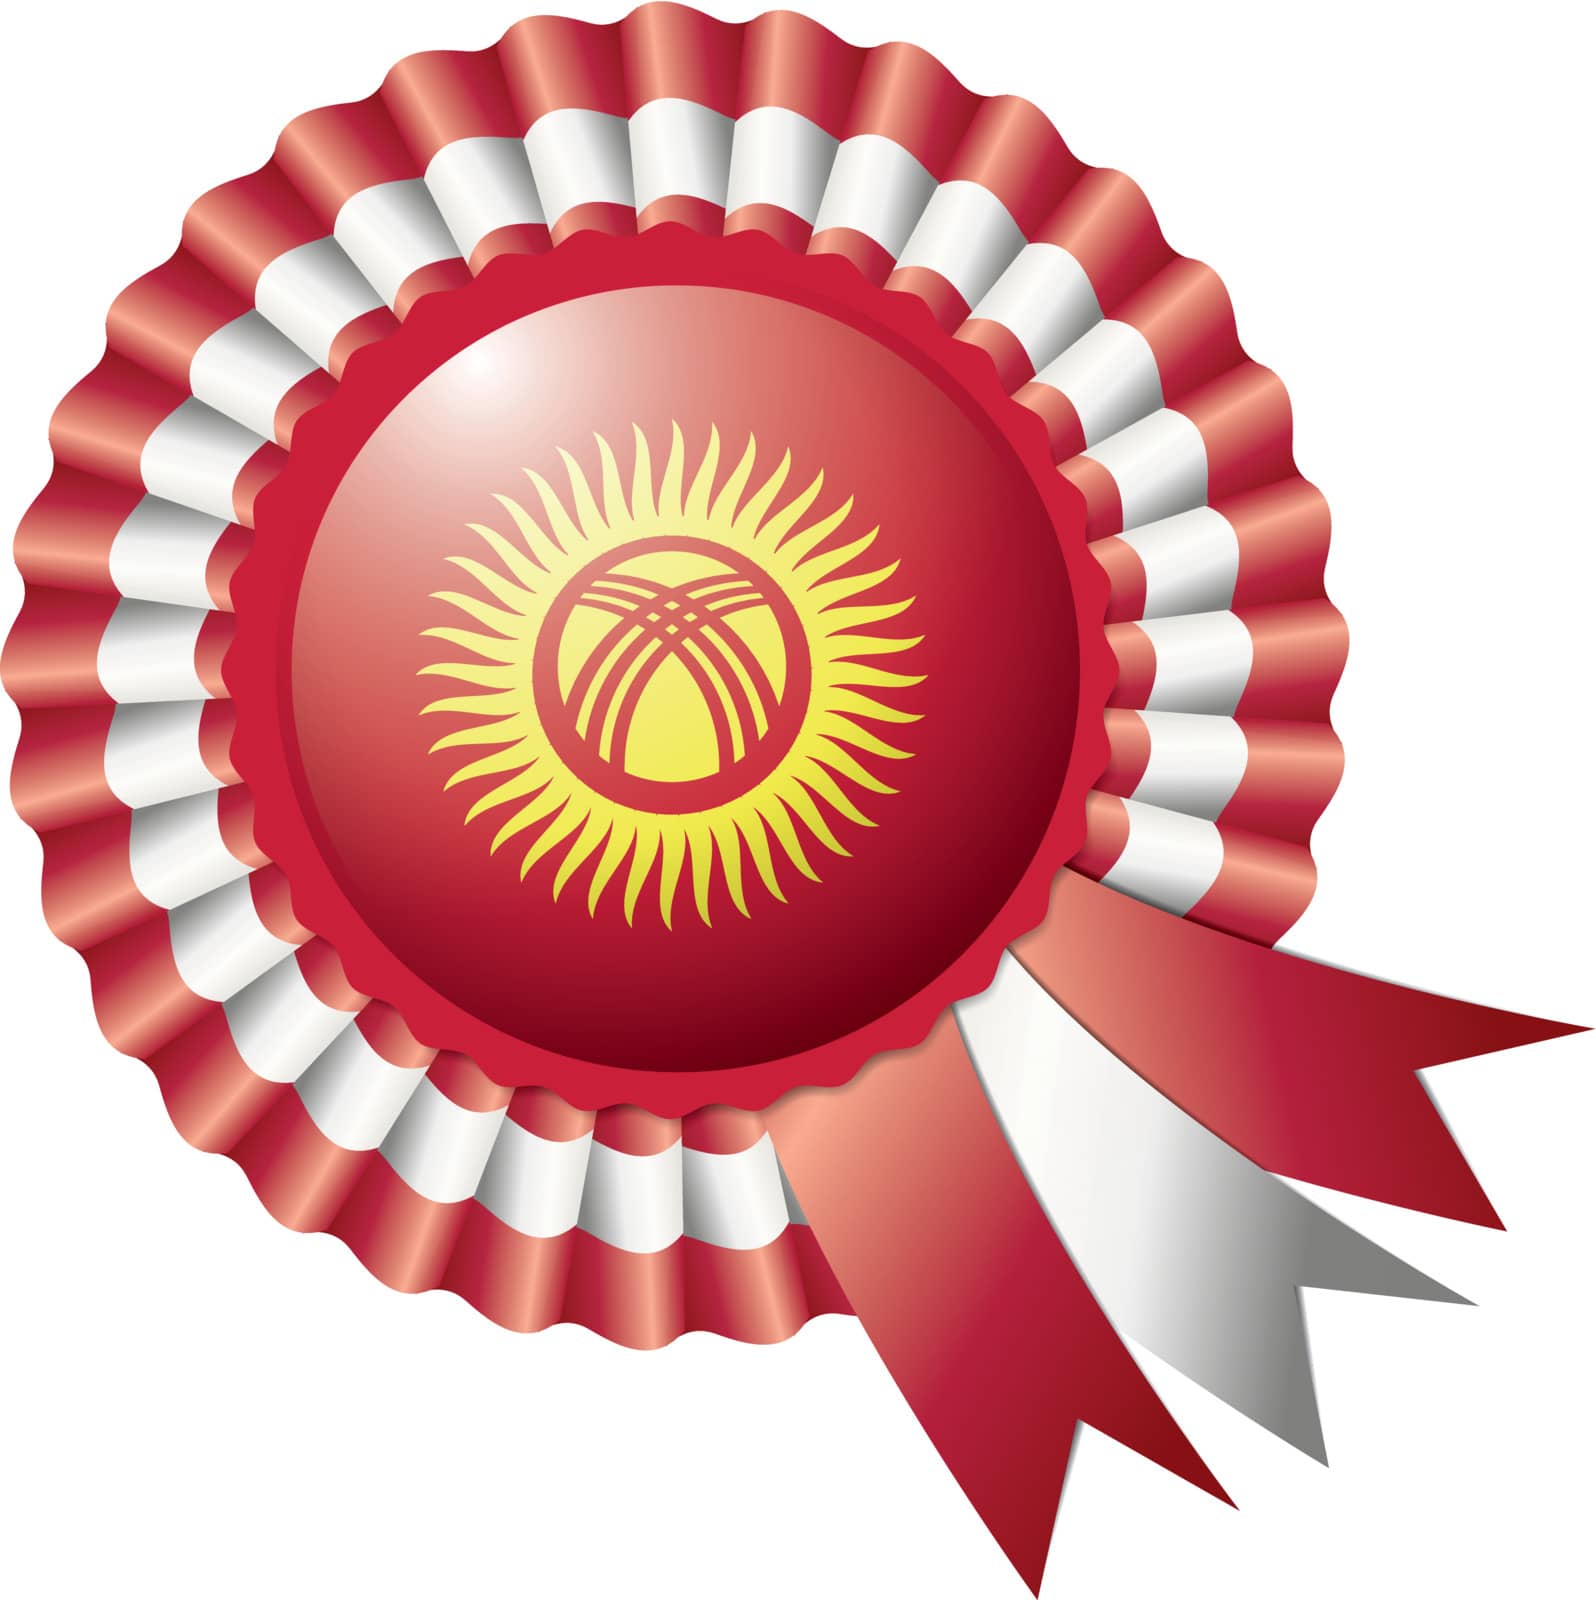 Kyrgyzstan detailed silk rosette flag, eps10 vector illustration